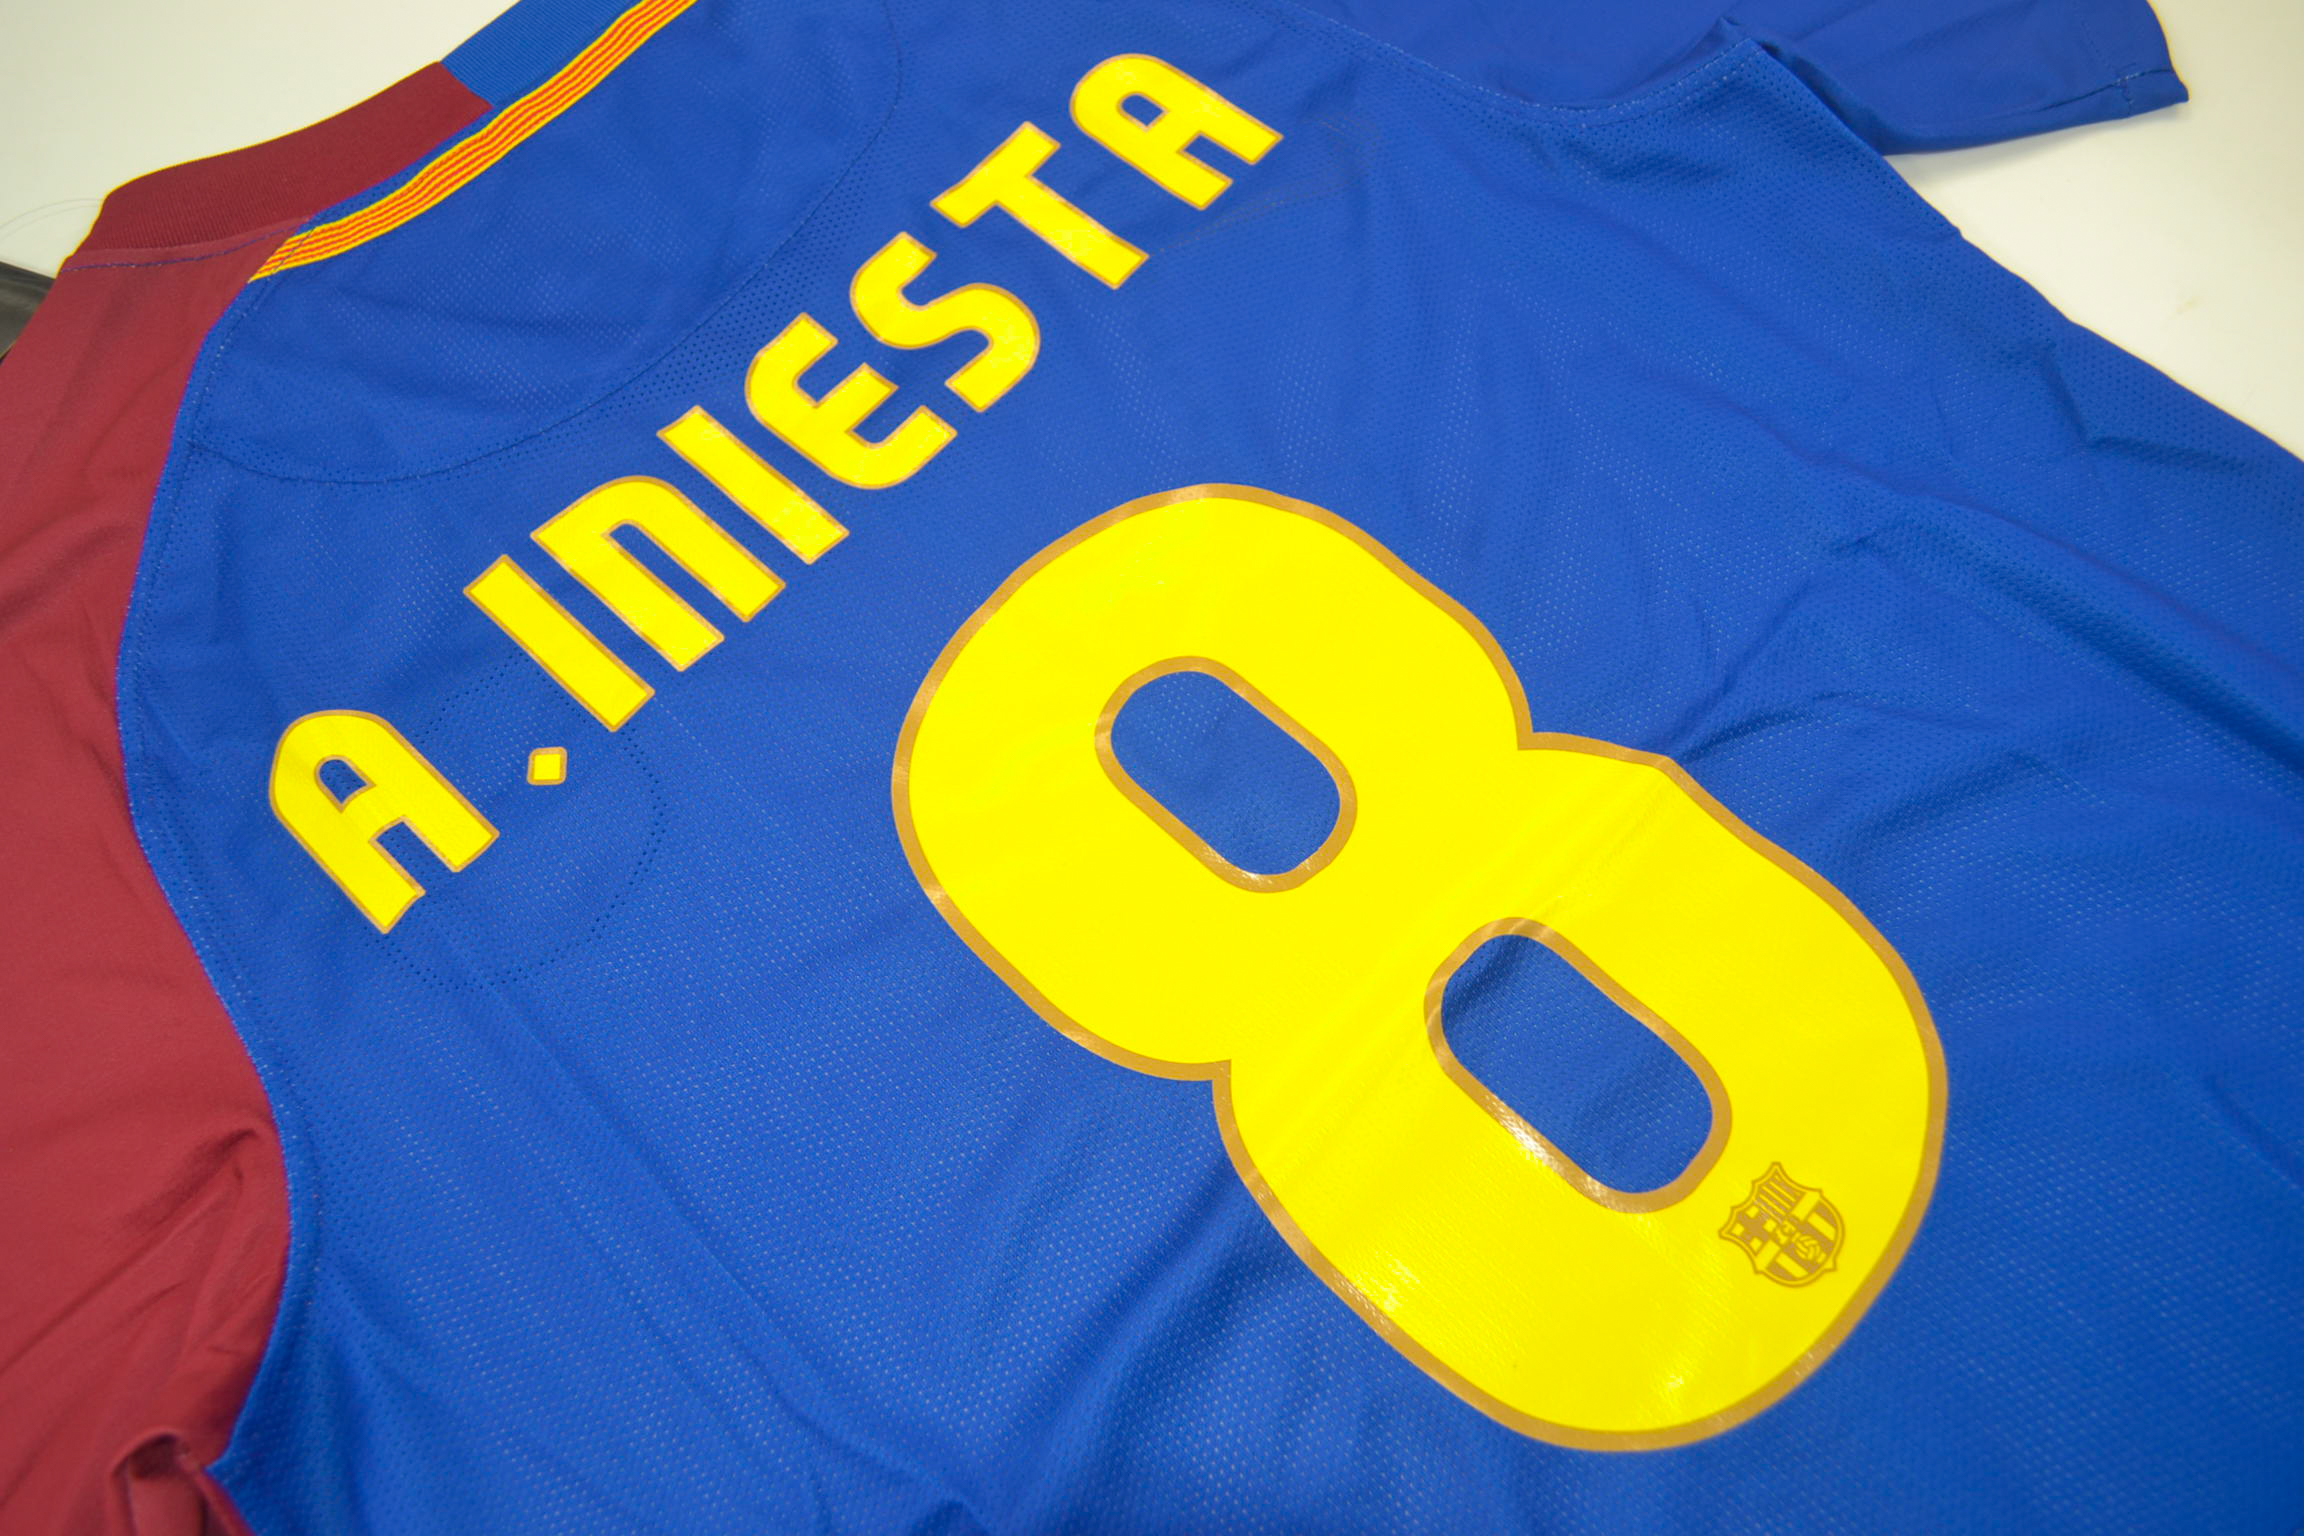 Iniesta jersey number